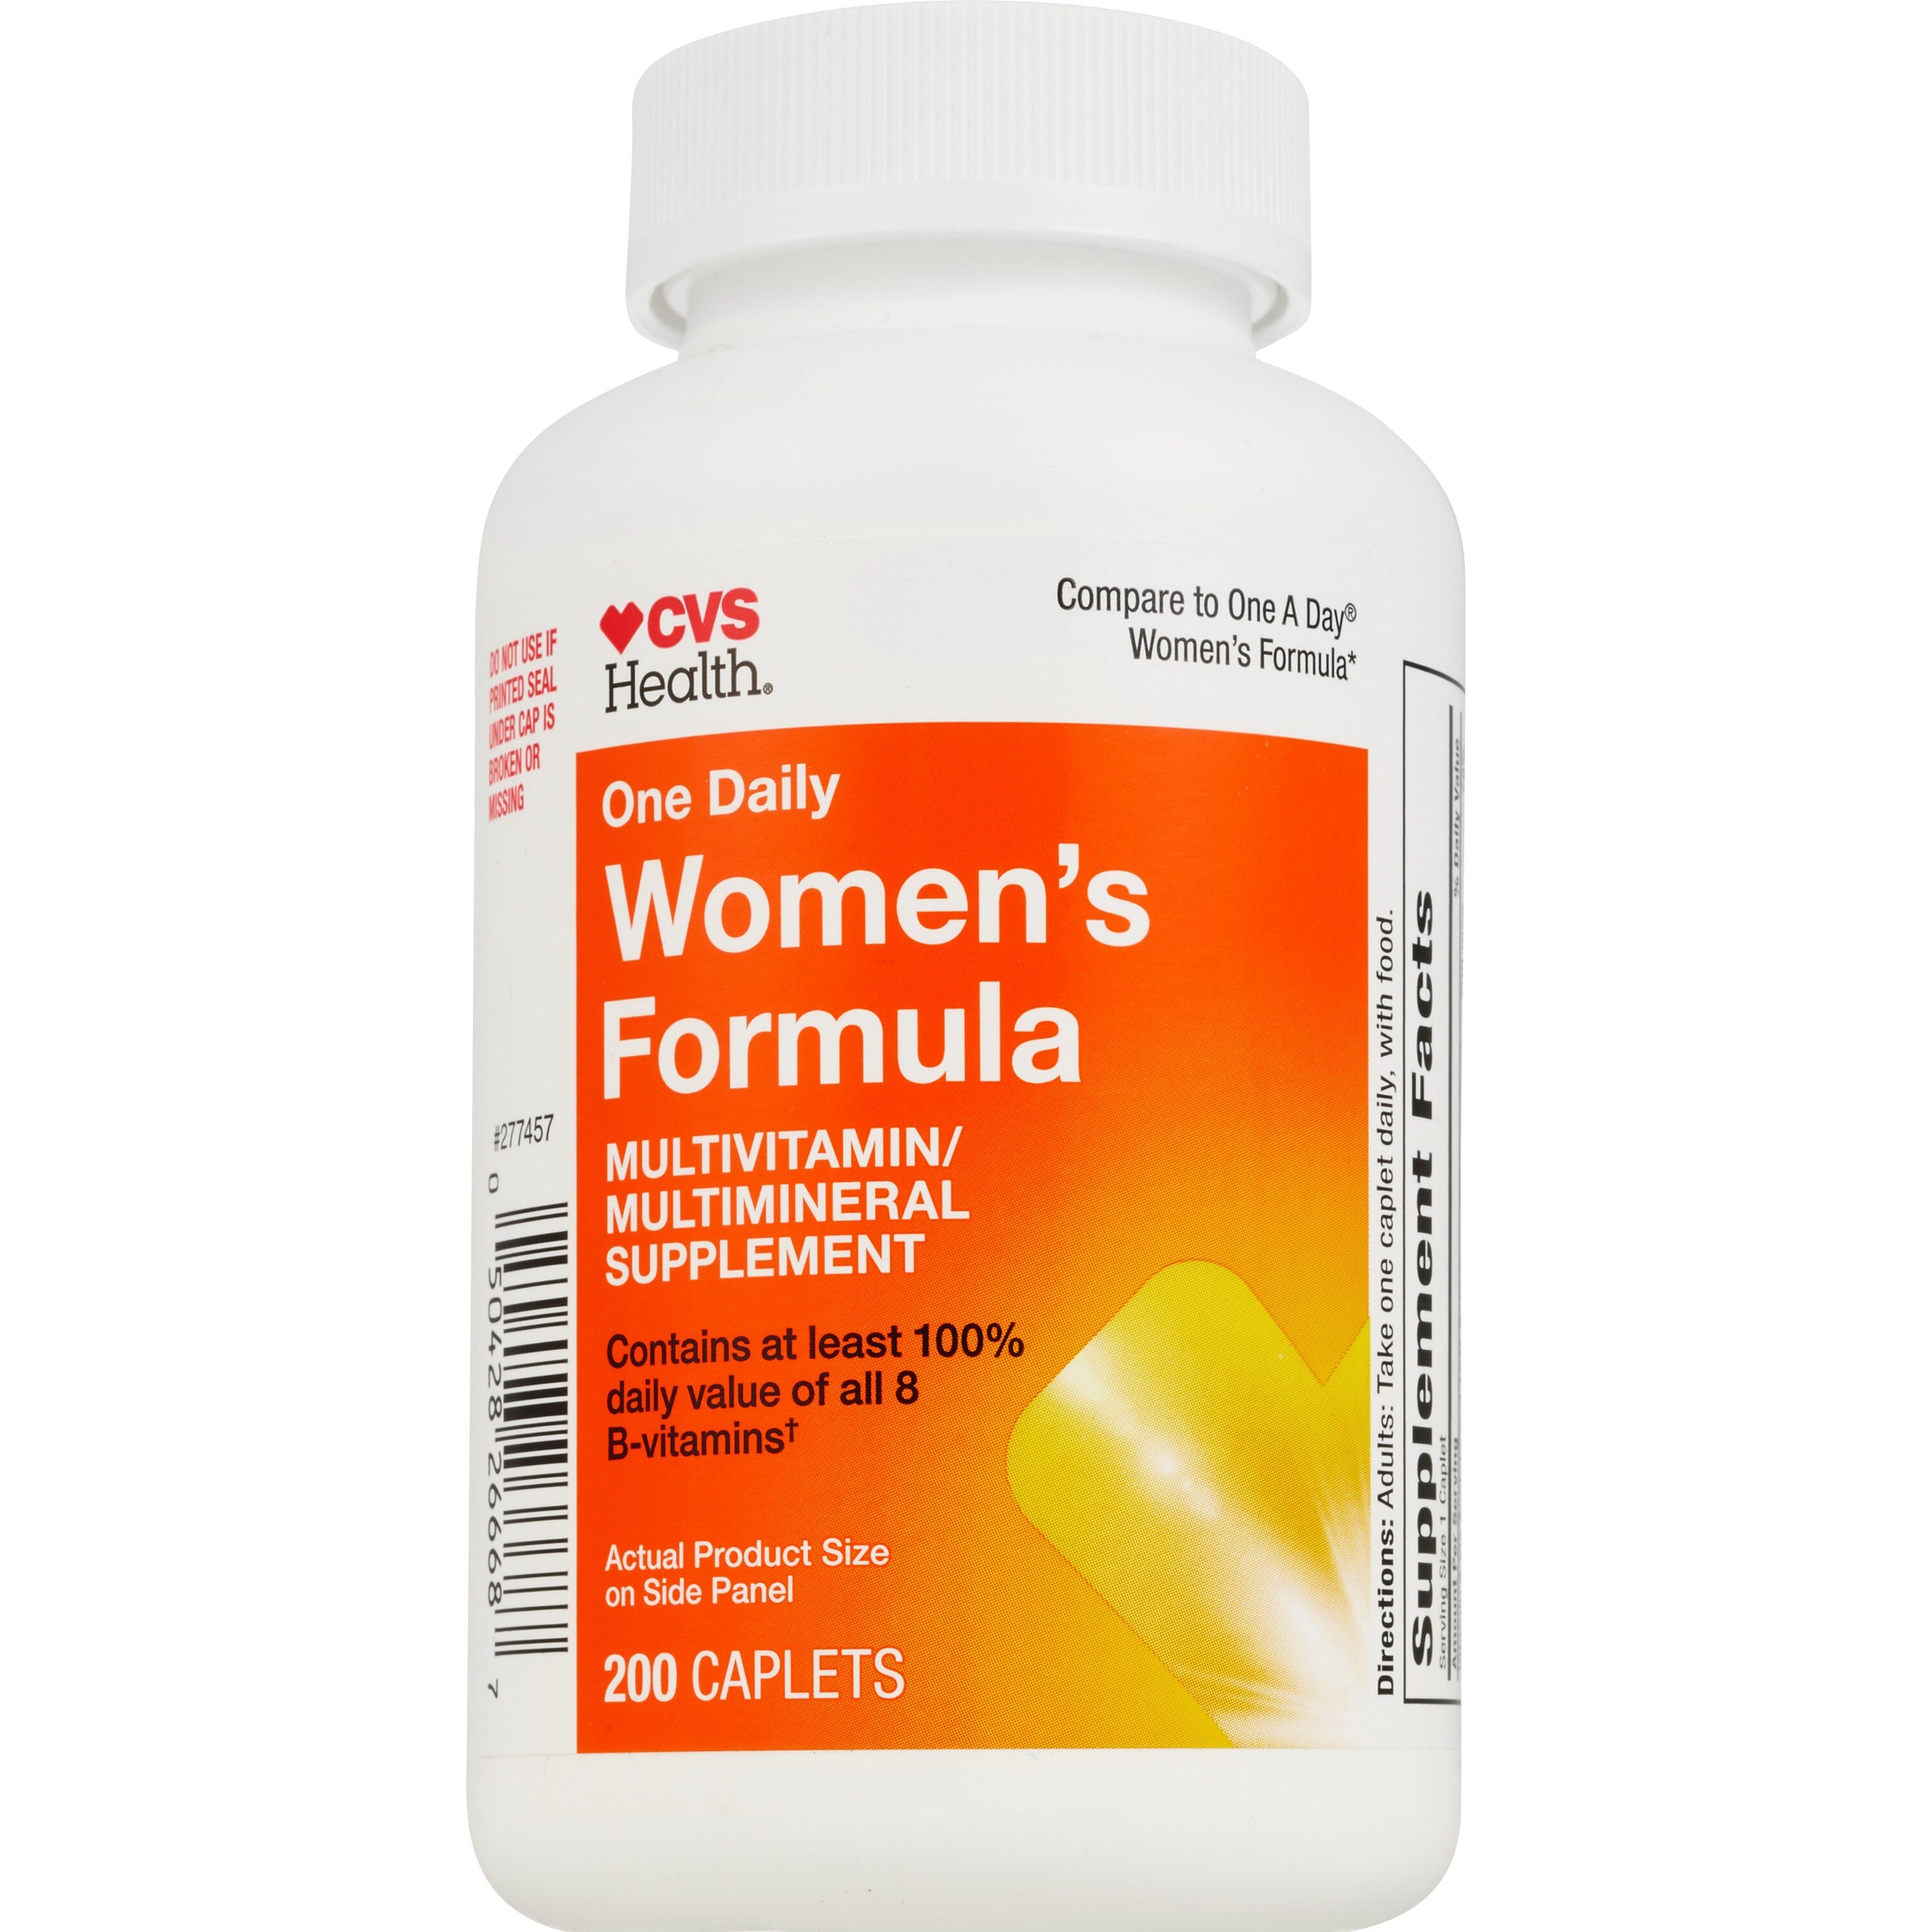 CVS Health One Daily - Suplemento de multivitaminas/multiminerales, fórmula para mujer, 200 u.